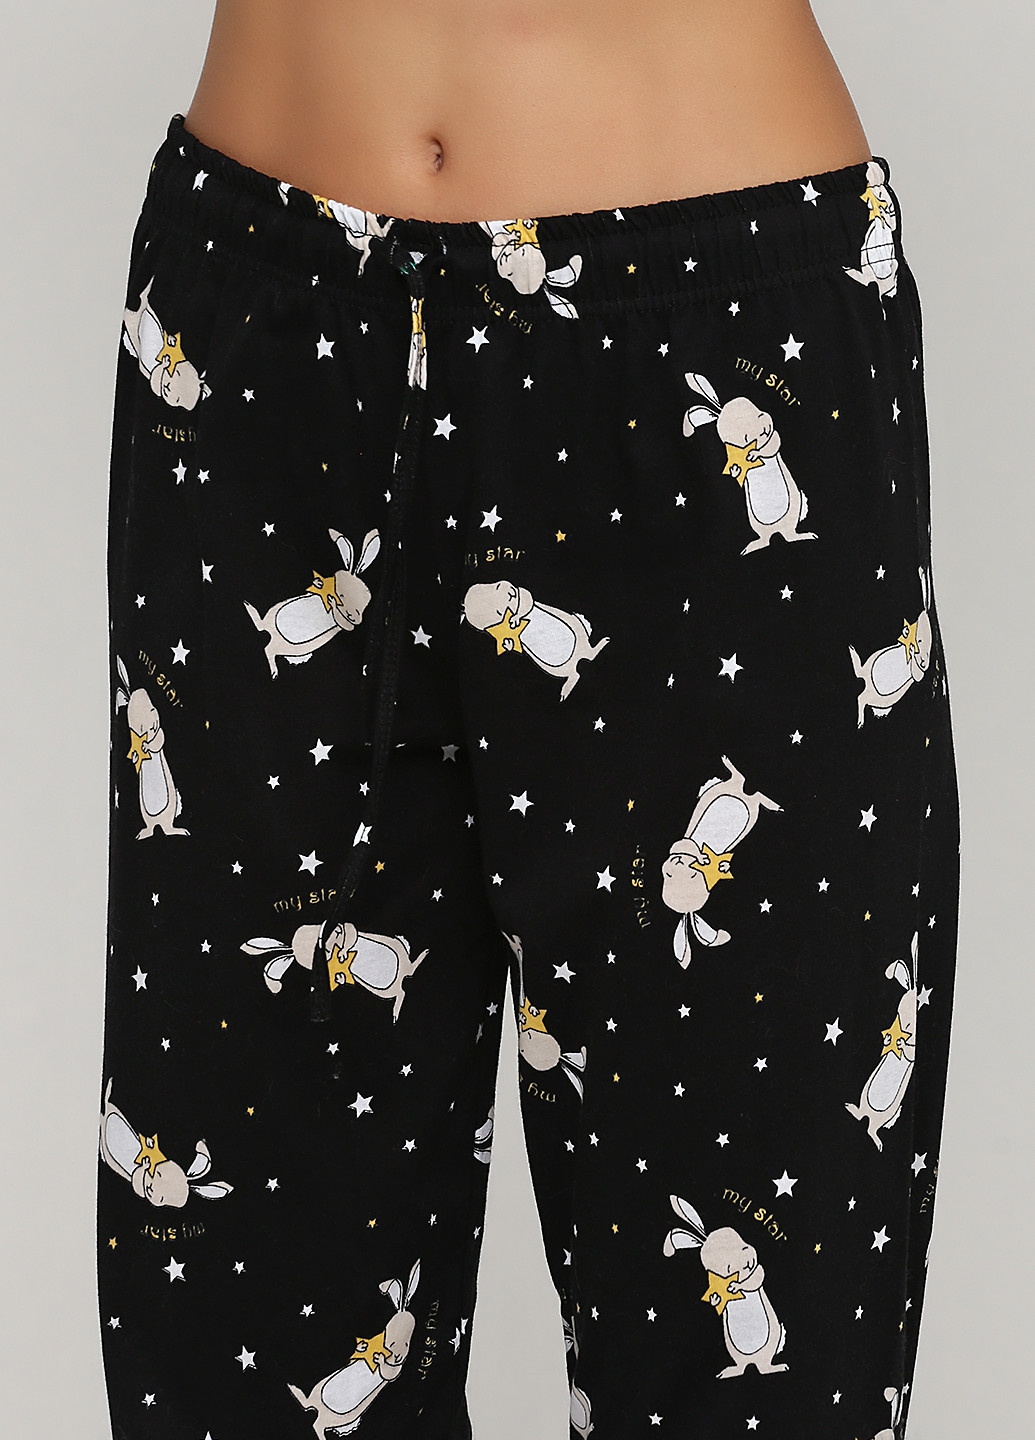 Черная всесезон пижама (лонгслив, брюки) лонгслив + брюки Vienetta